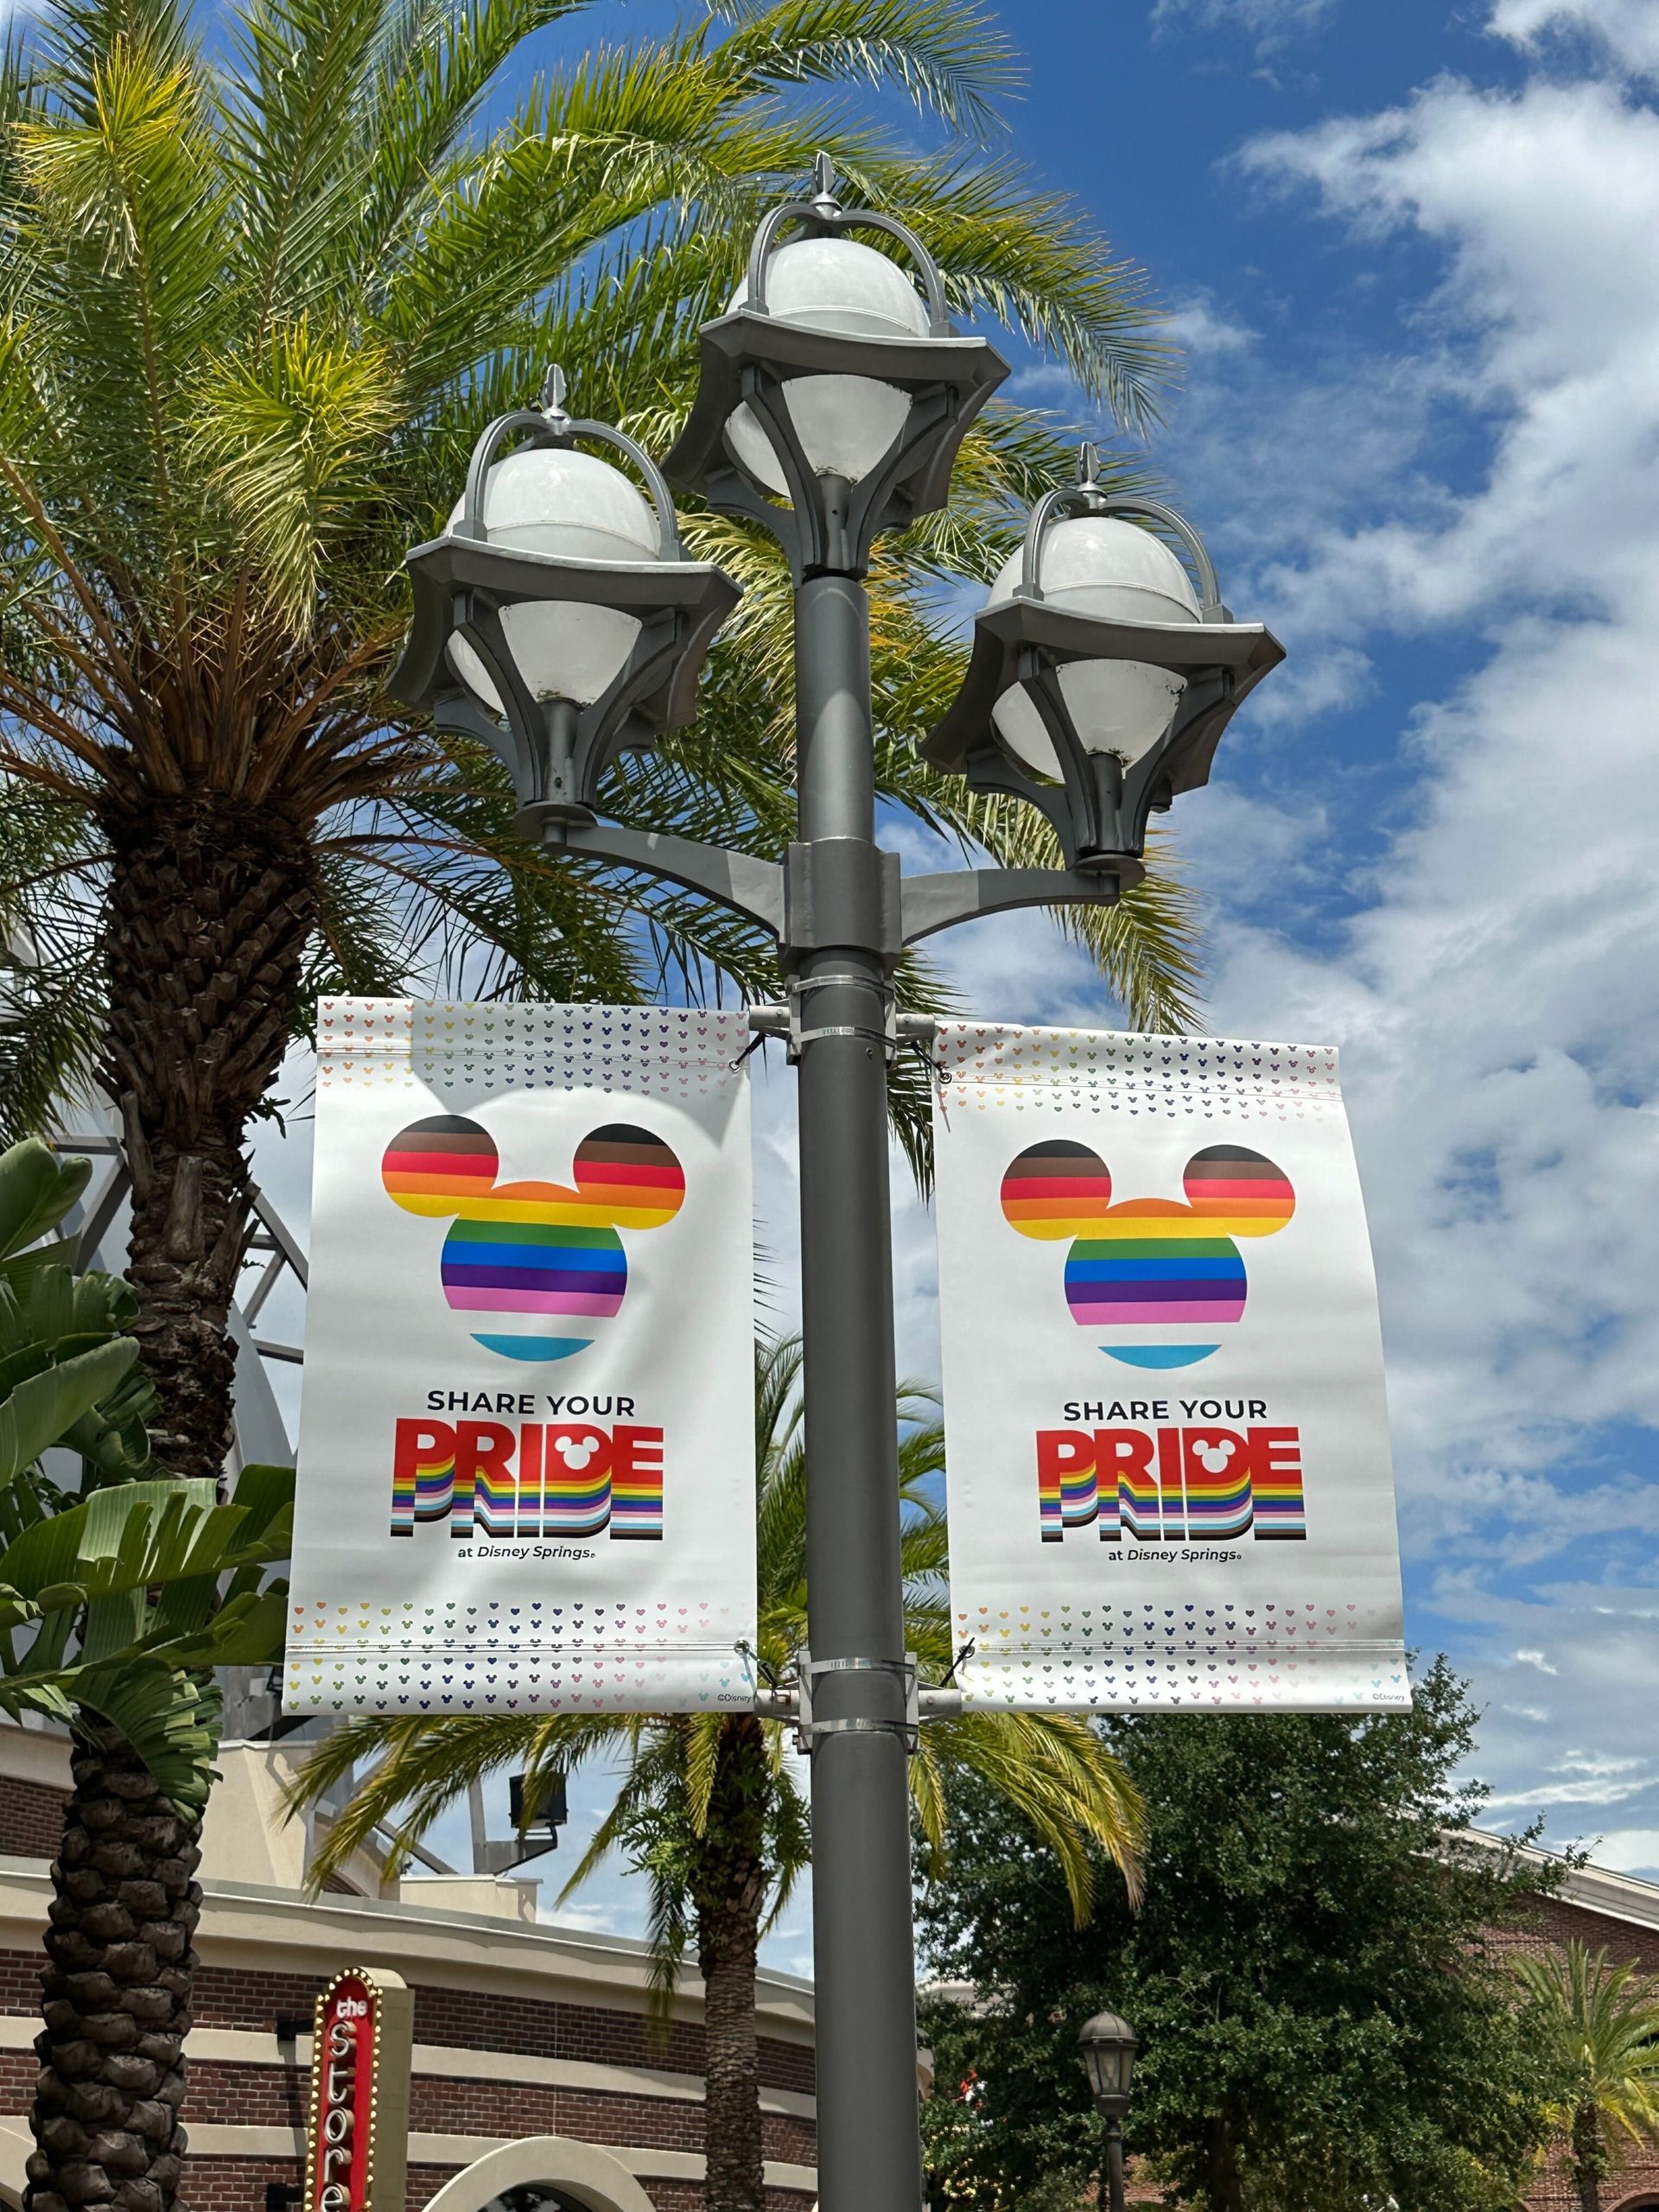 disney springs pride banners photo op